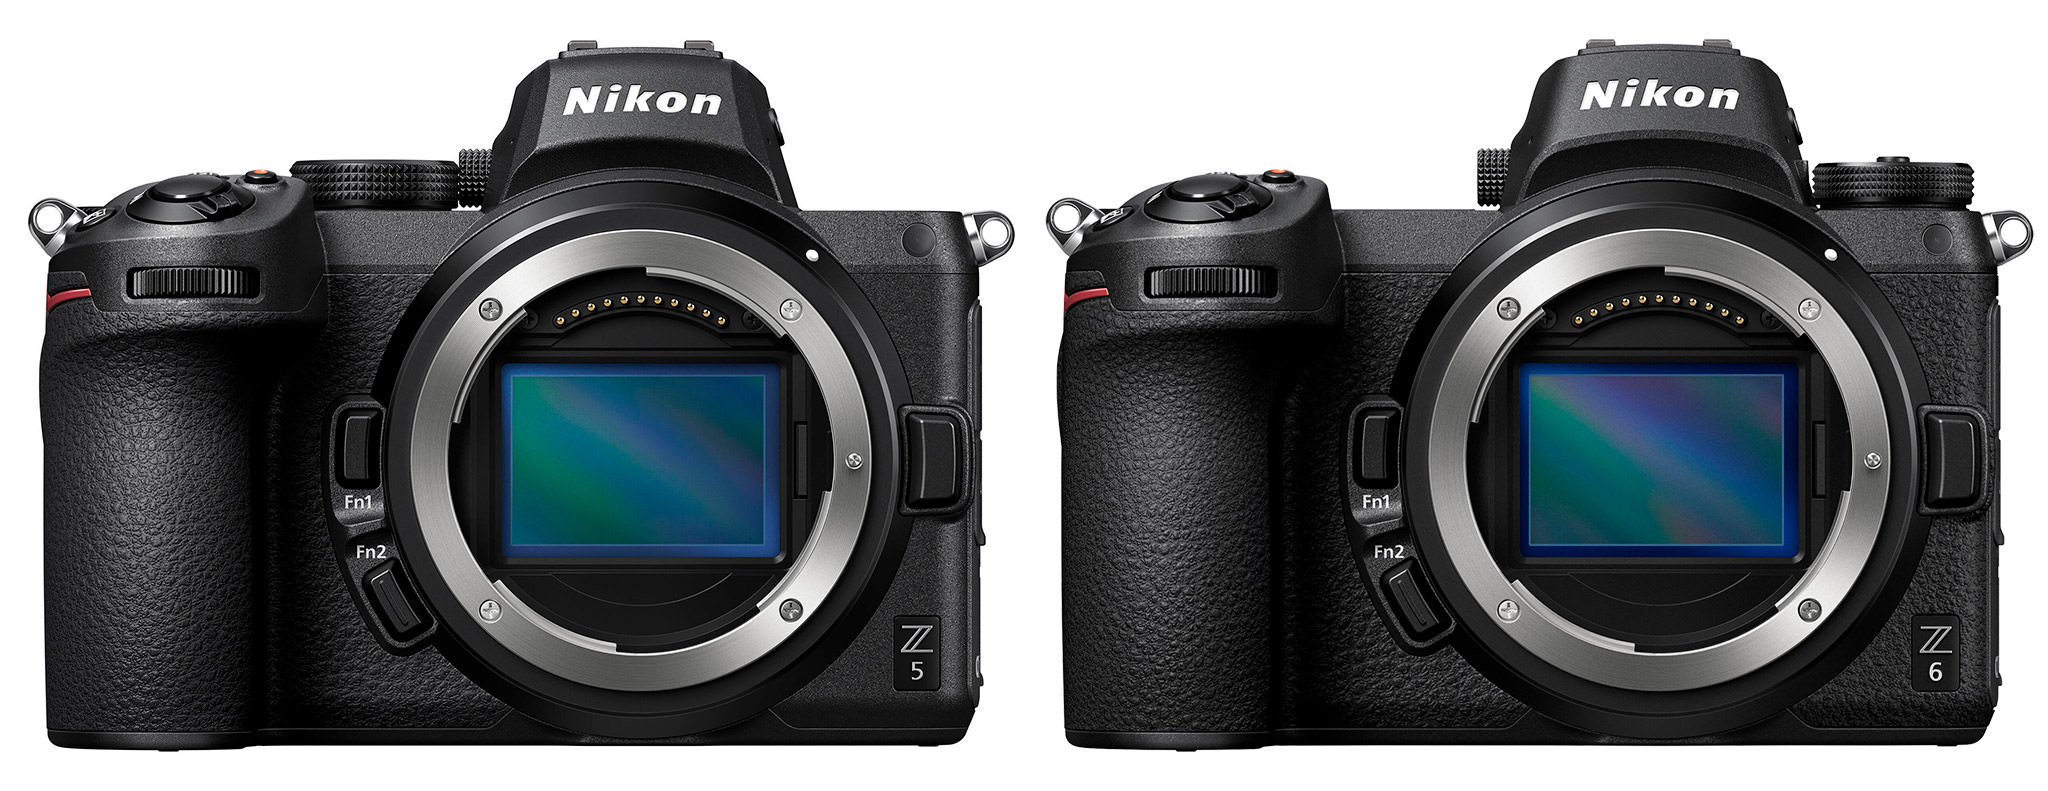 Nikon-Z5-vs-Z6.jpg